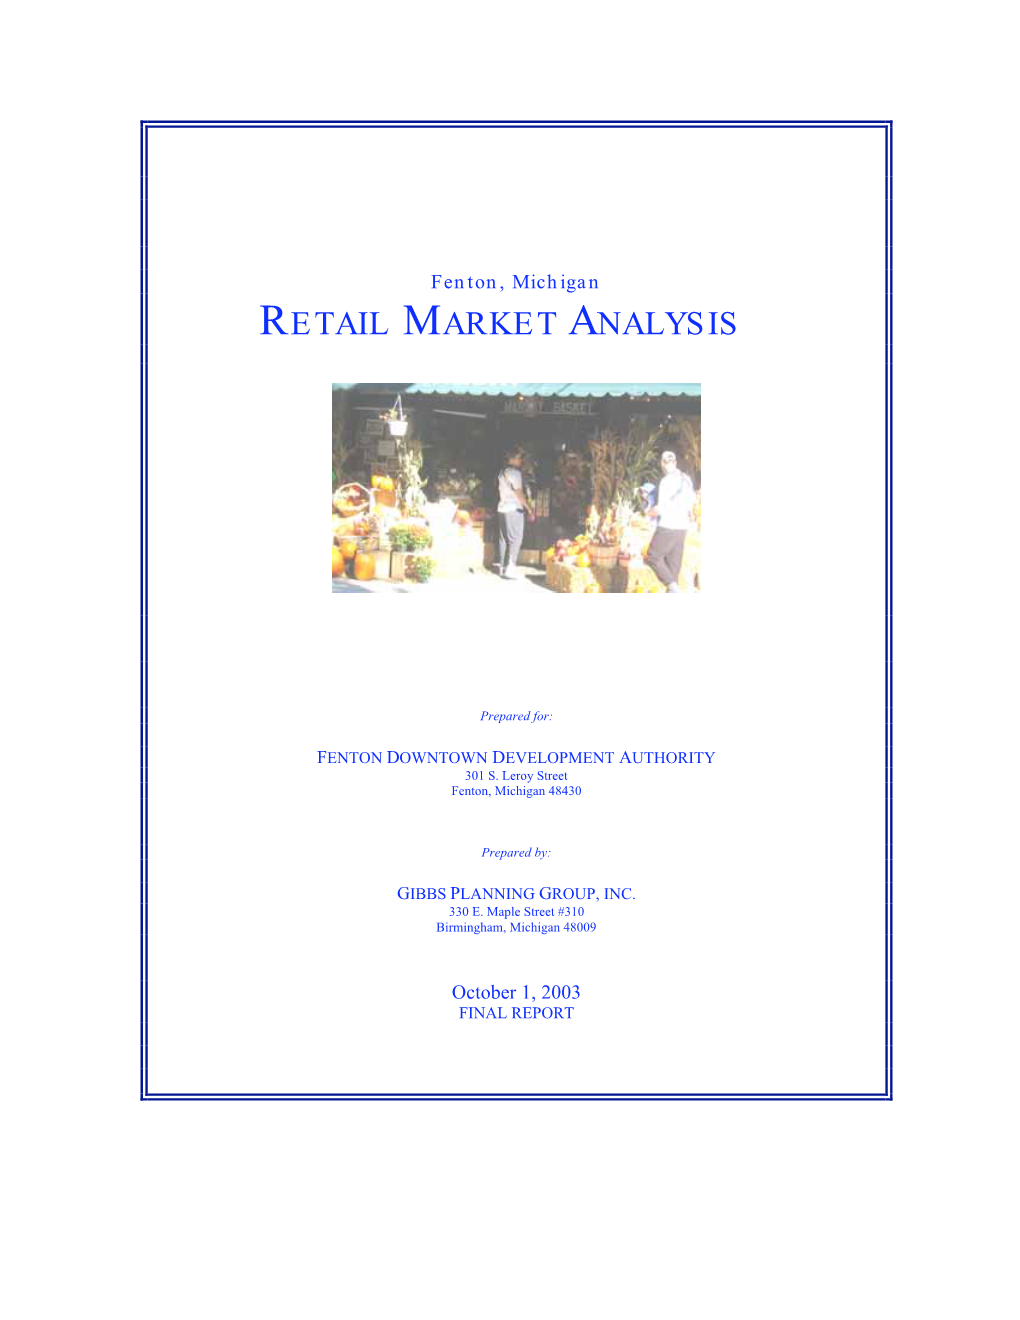 Fenton Retail Market Analysis